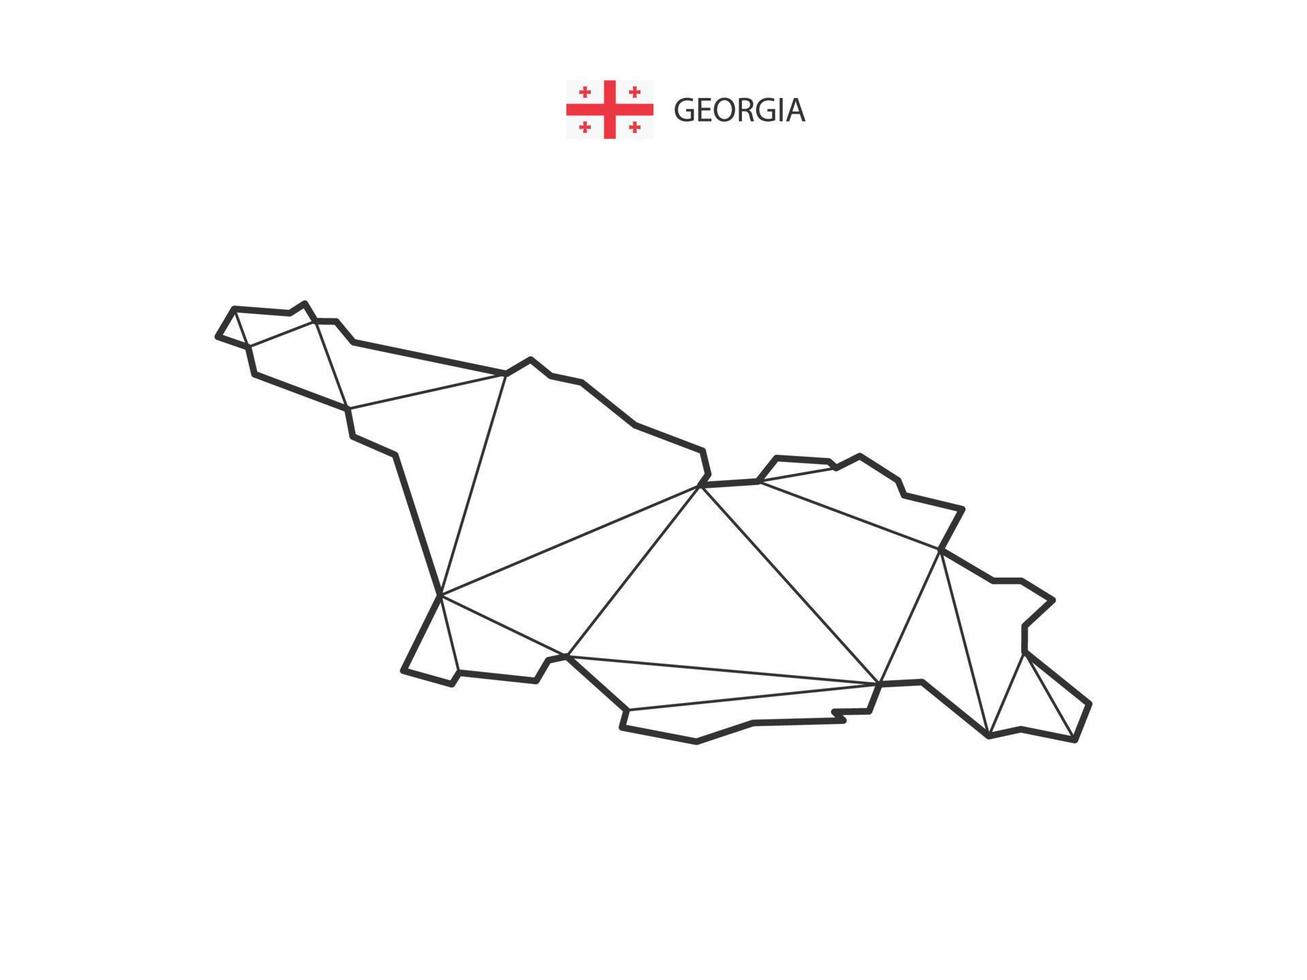 mosaico triángulos mapa estilo de georgia aislado sobre un fondo blanco. diseño abstracto para vectores. vector